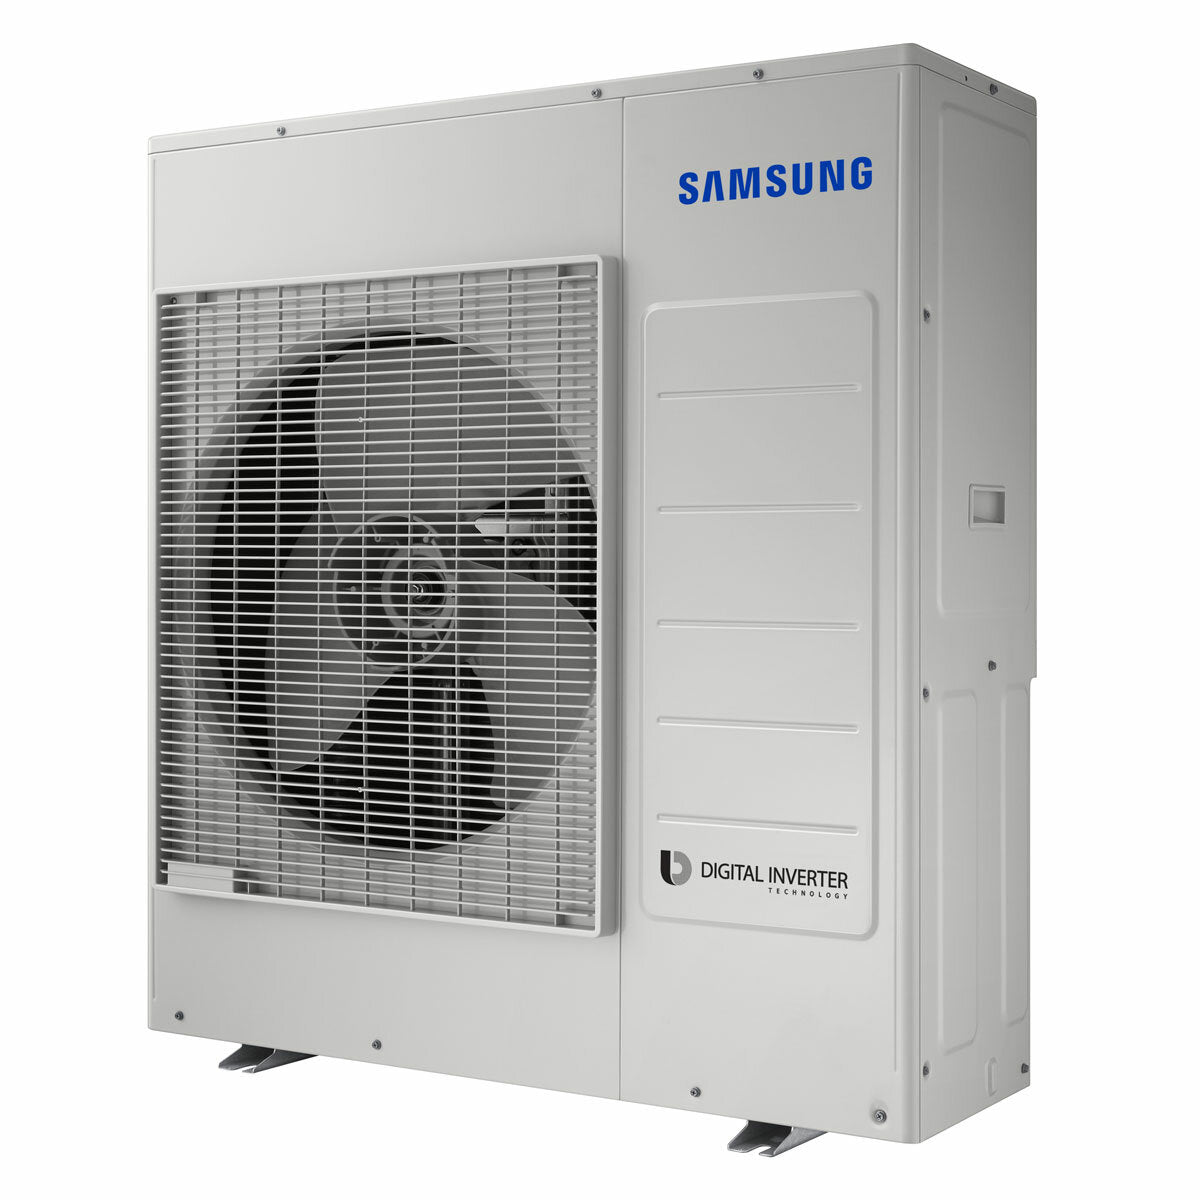 Samsung air conditioner Windfree 4-way penta split 7000 + 9000 + 9000 + 9000 + 9000 BTU inverter A ++ outdoor unit 10.0 kW